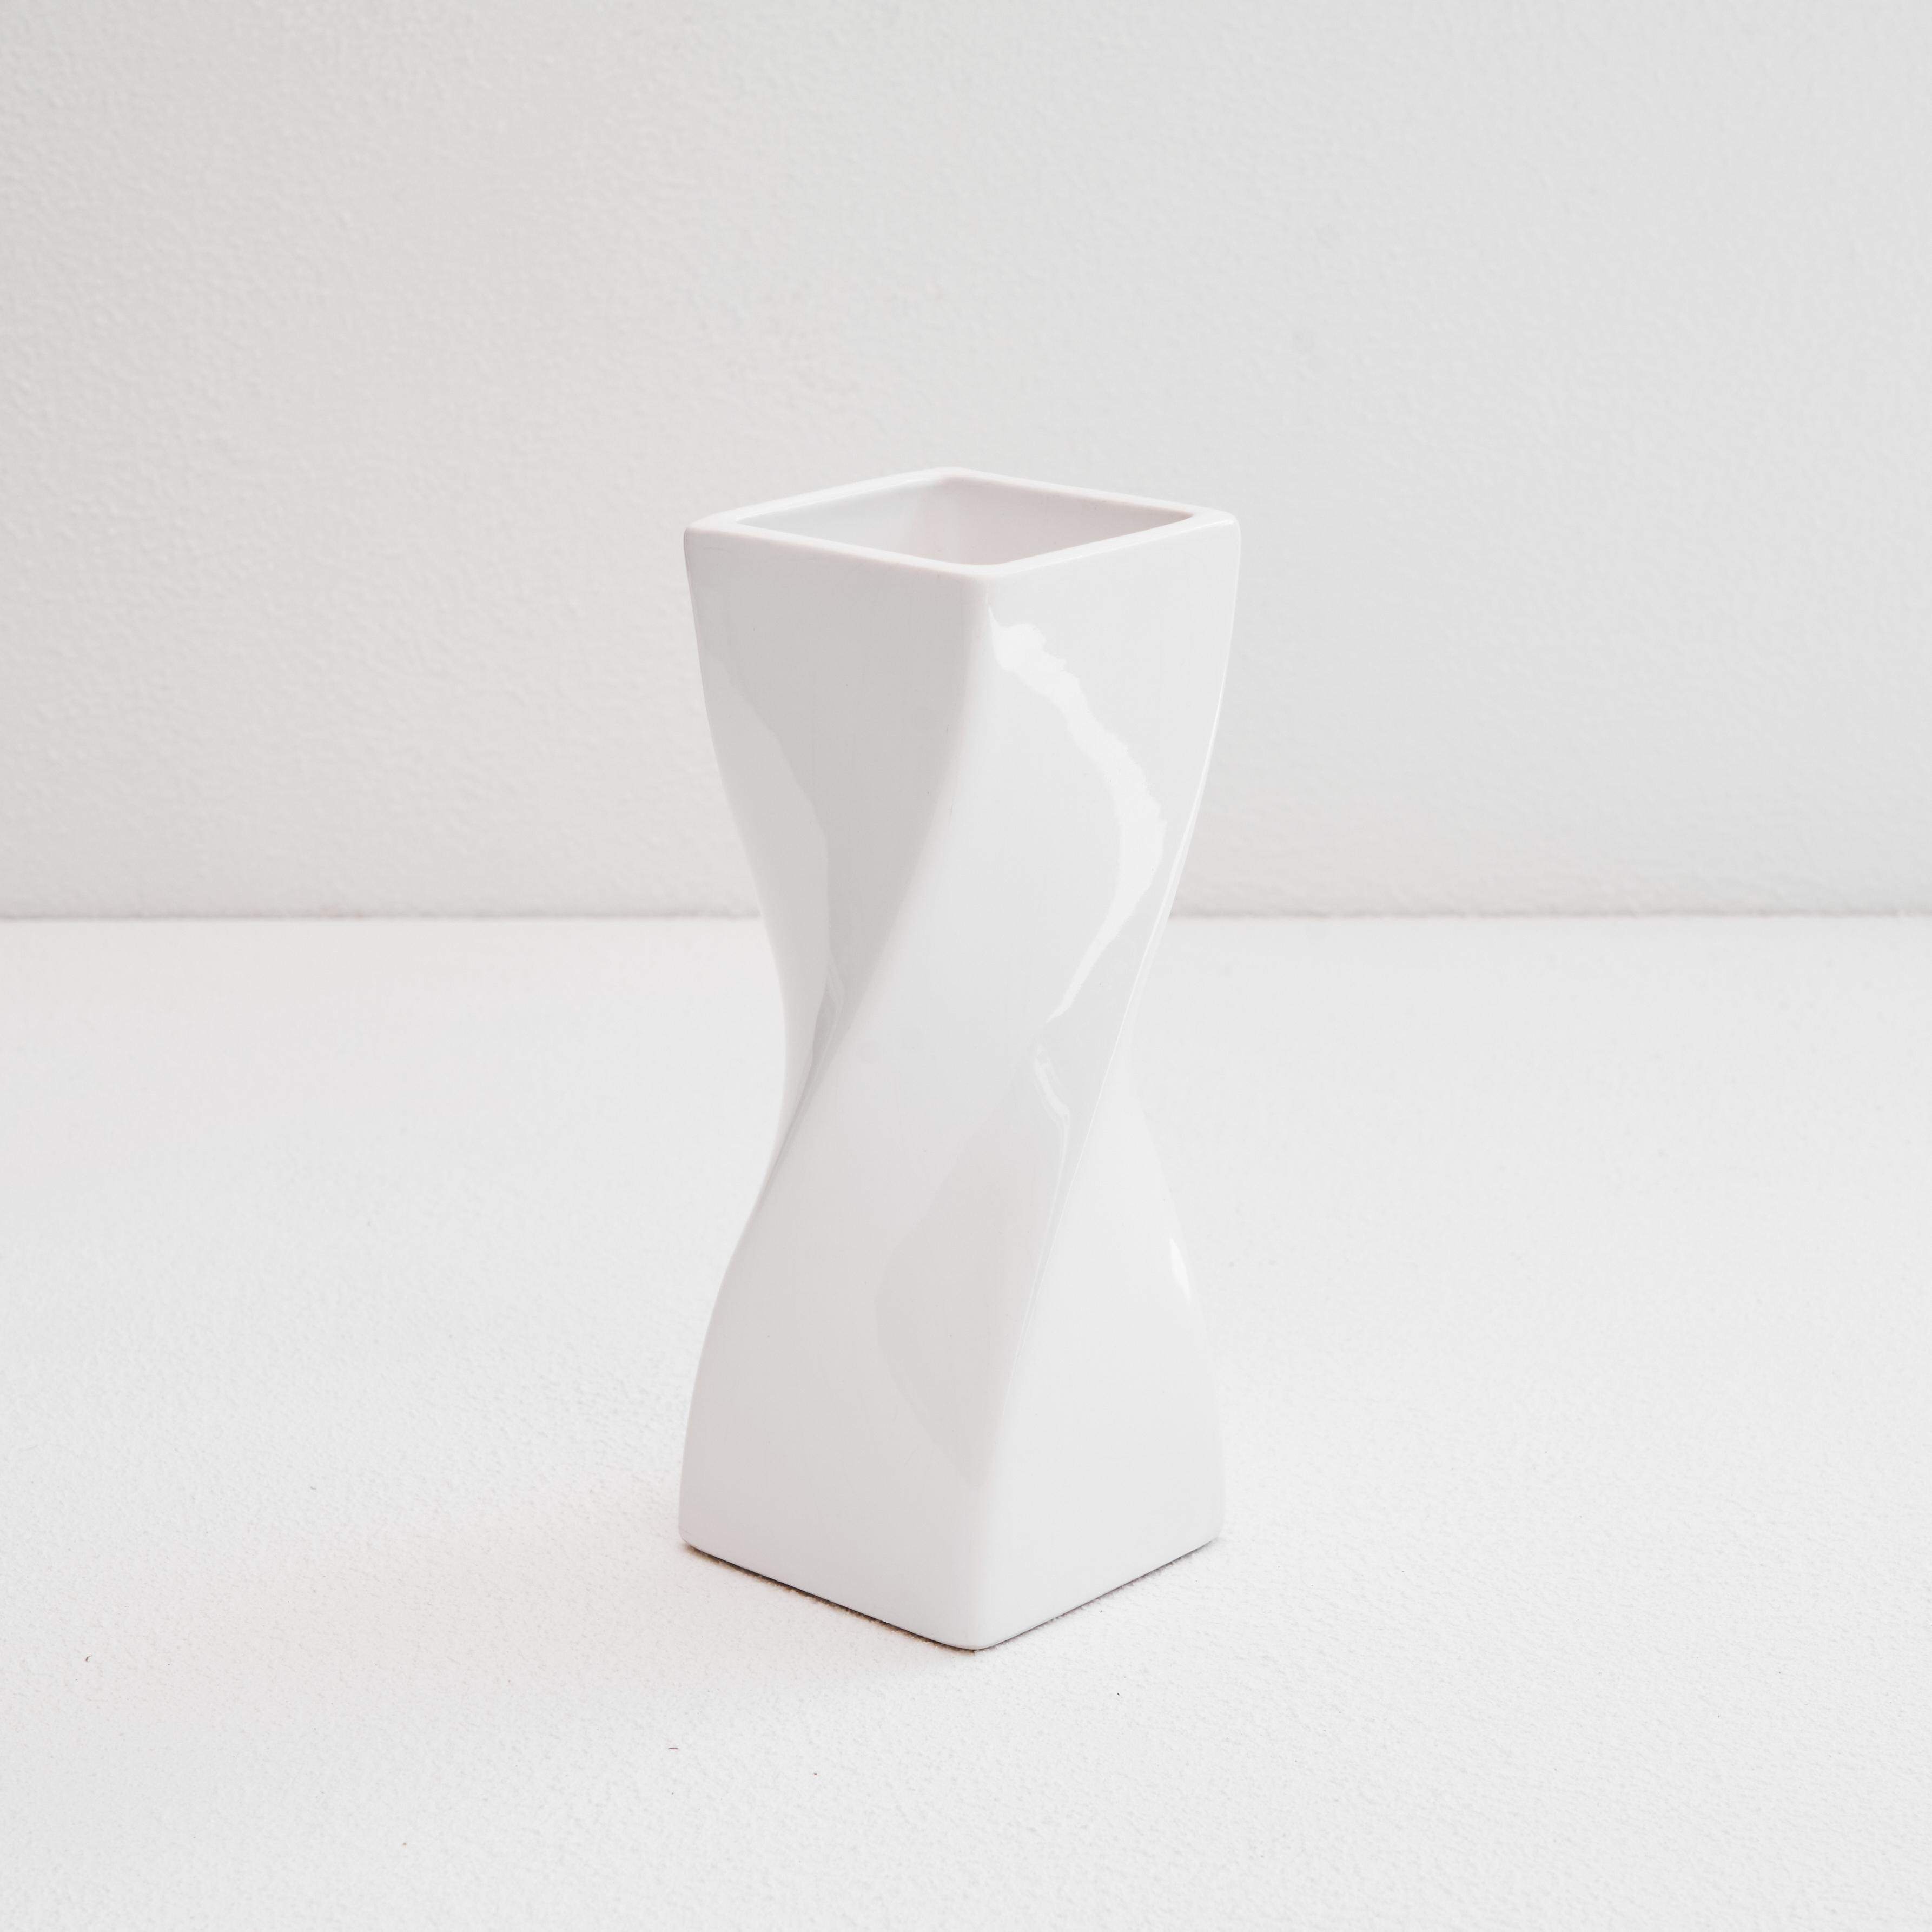 Verdrehte Vase aus weiß glasierter Keramik 1980er Jahre.

Dies ist eine wunderbare weiß glasierte Keramikvase mit einer postmodernen Form. Die gedrehte Form macht diese Vase aus jedem Blickwinkel anders und langweilt nie. Es ähnelt den Werken des